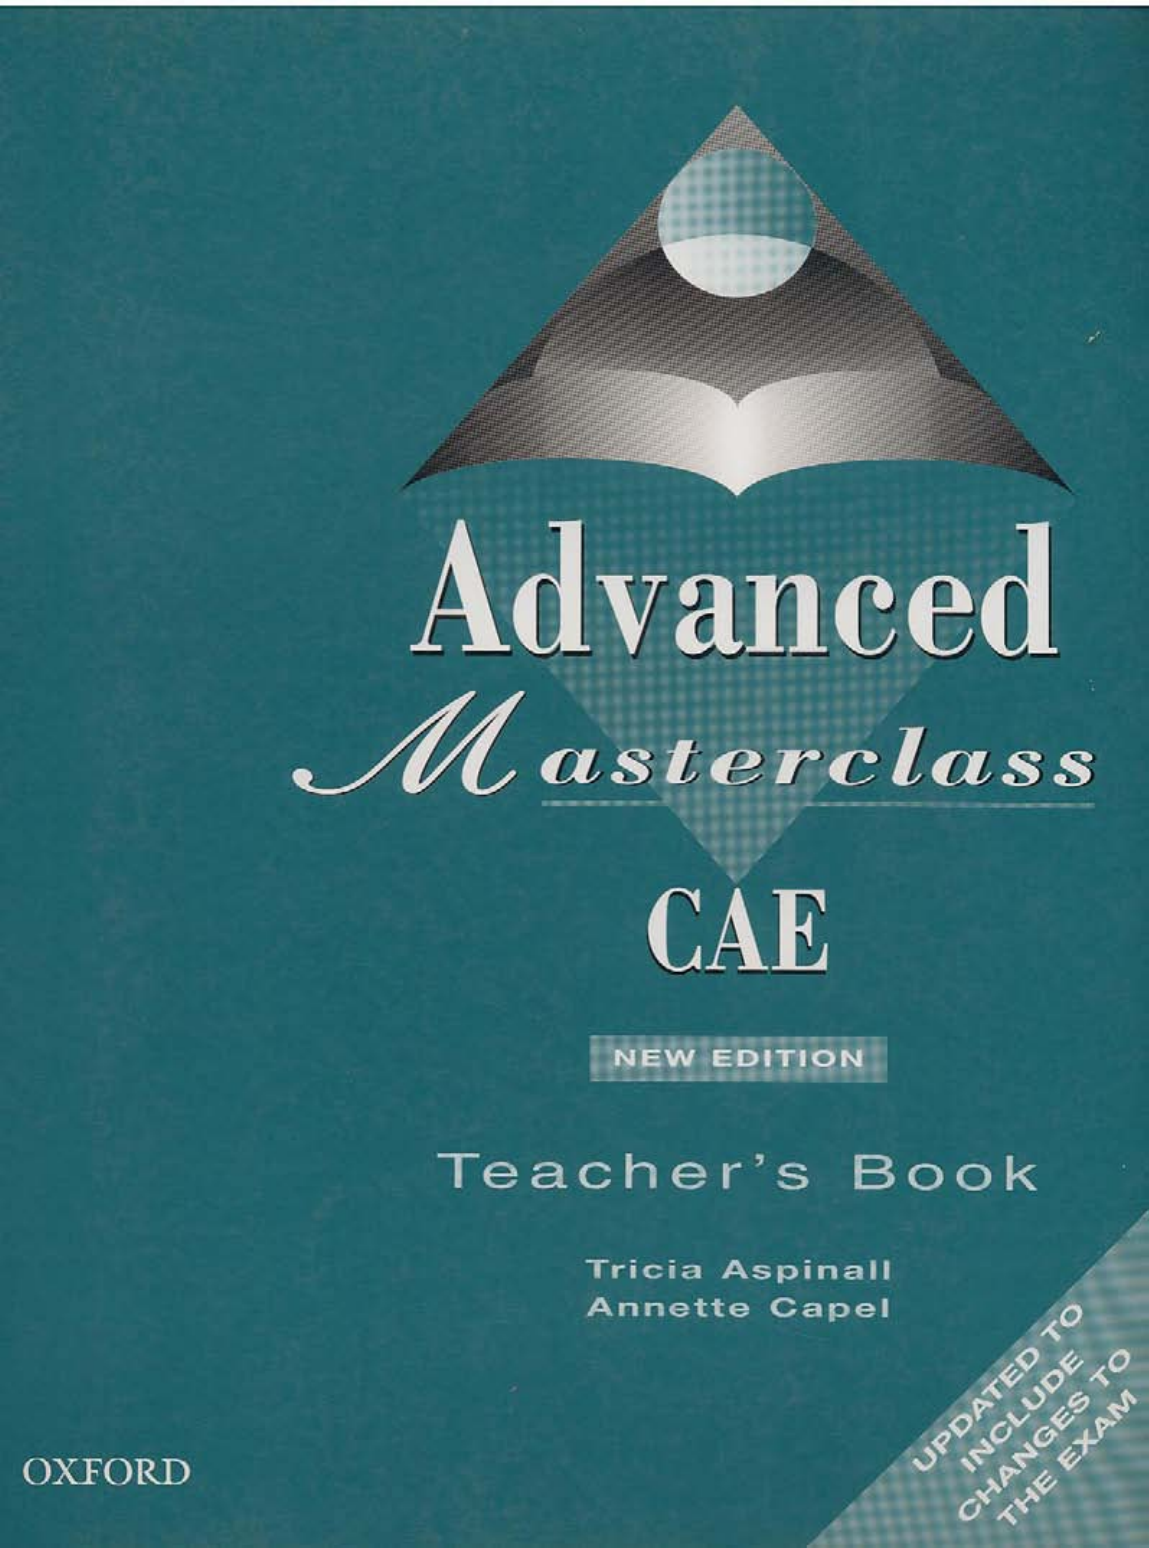 Mein Schönes Land Tv Frisch 4 Advanced Masterclass Cae Teachers Book